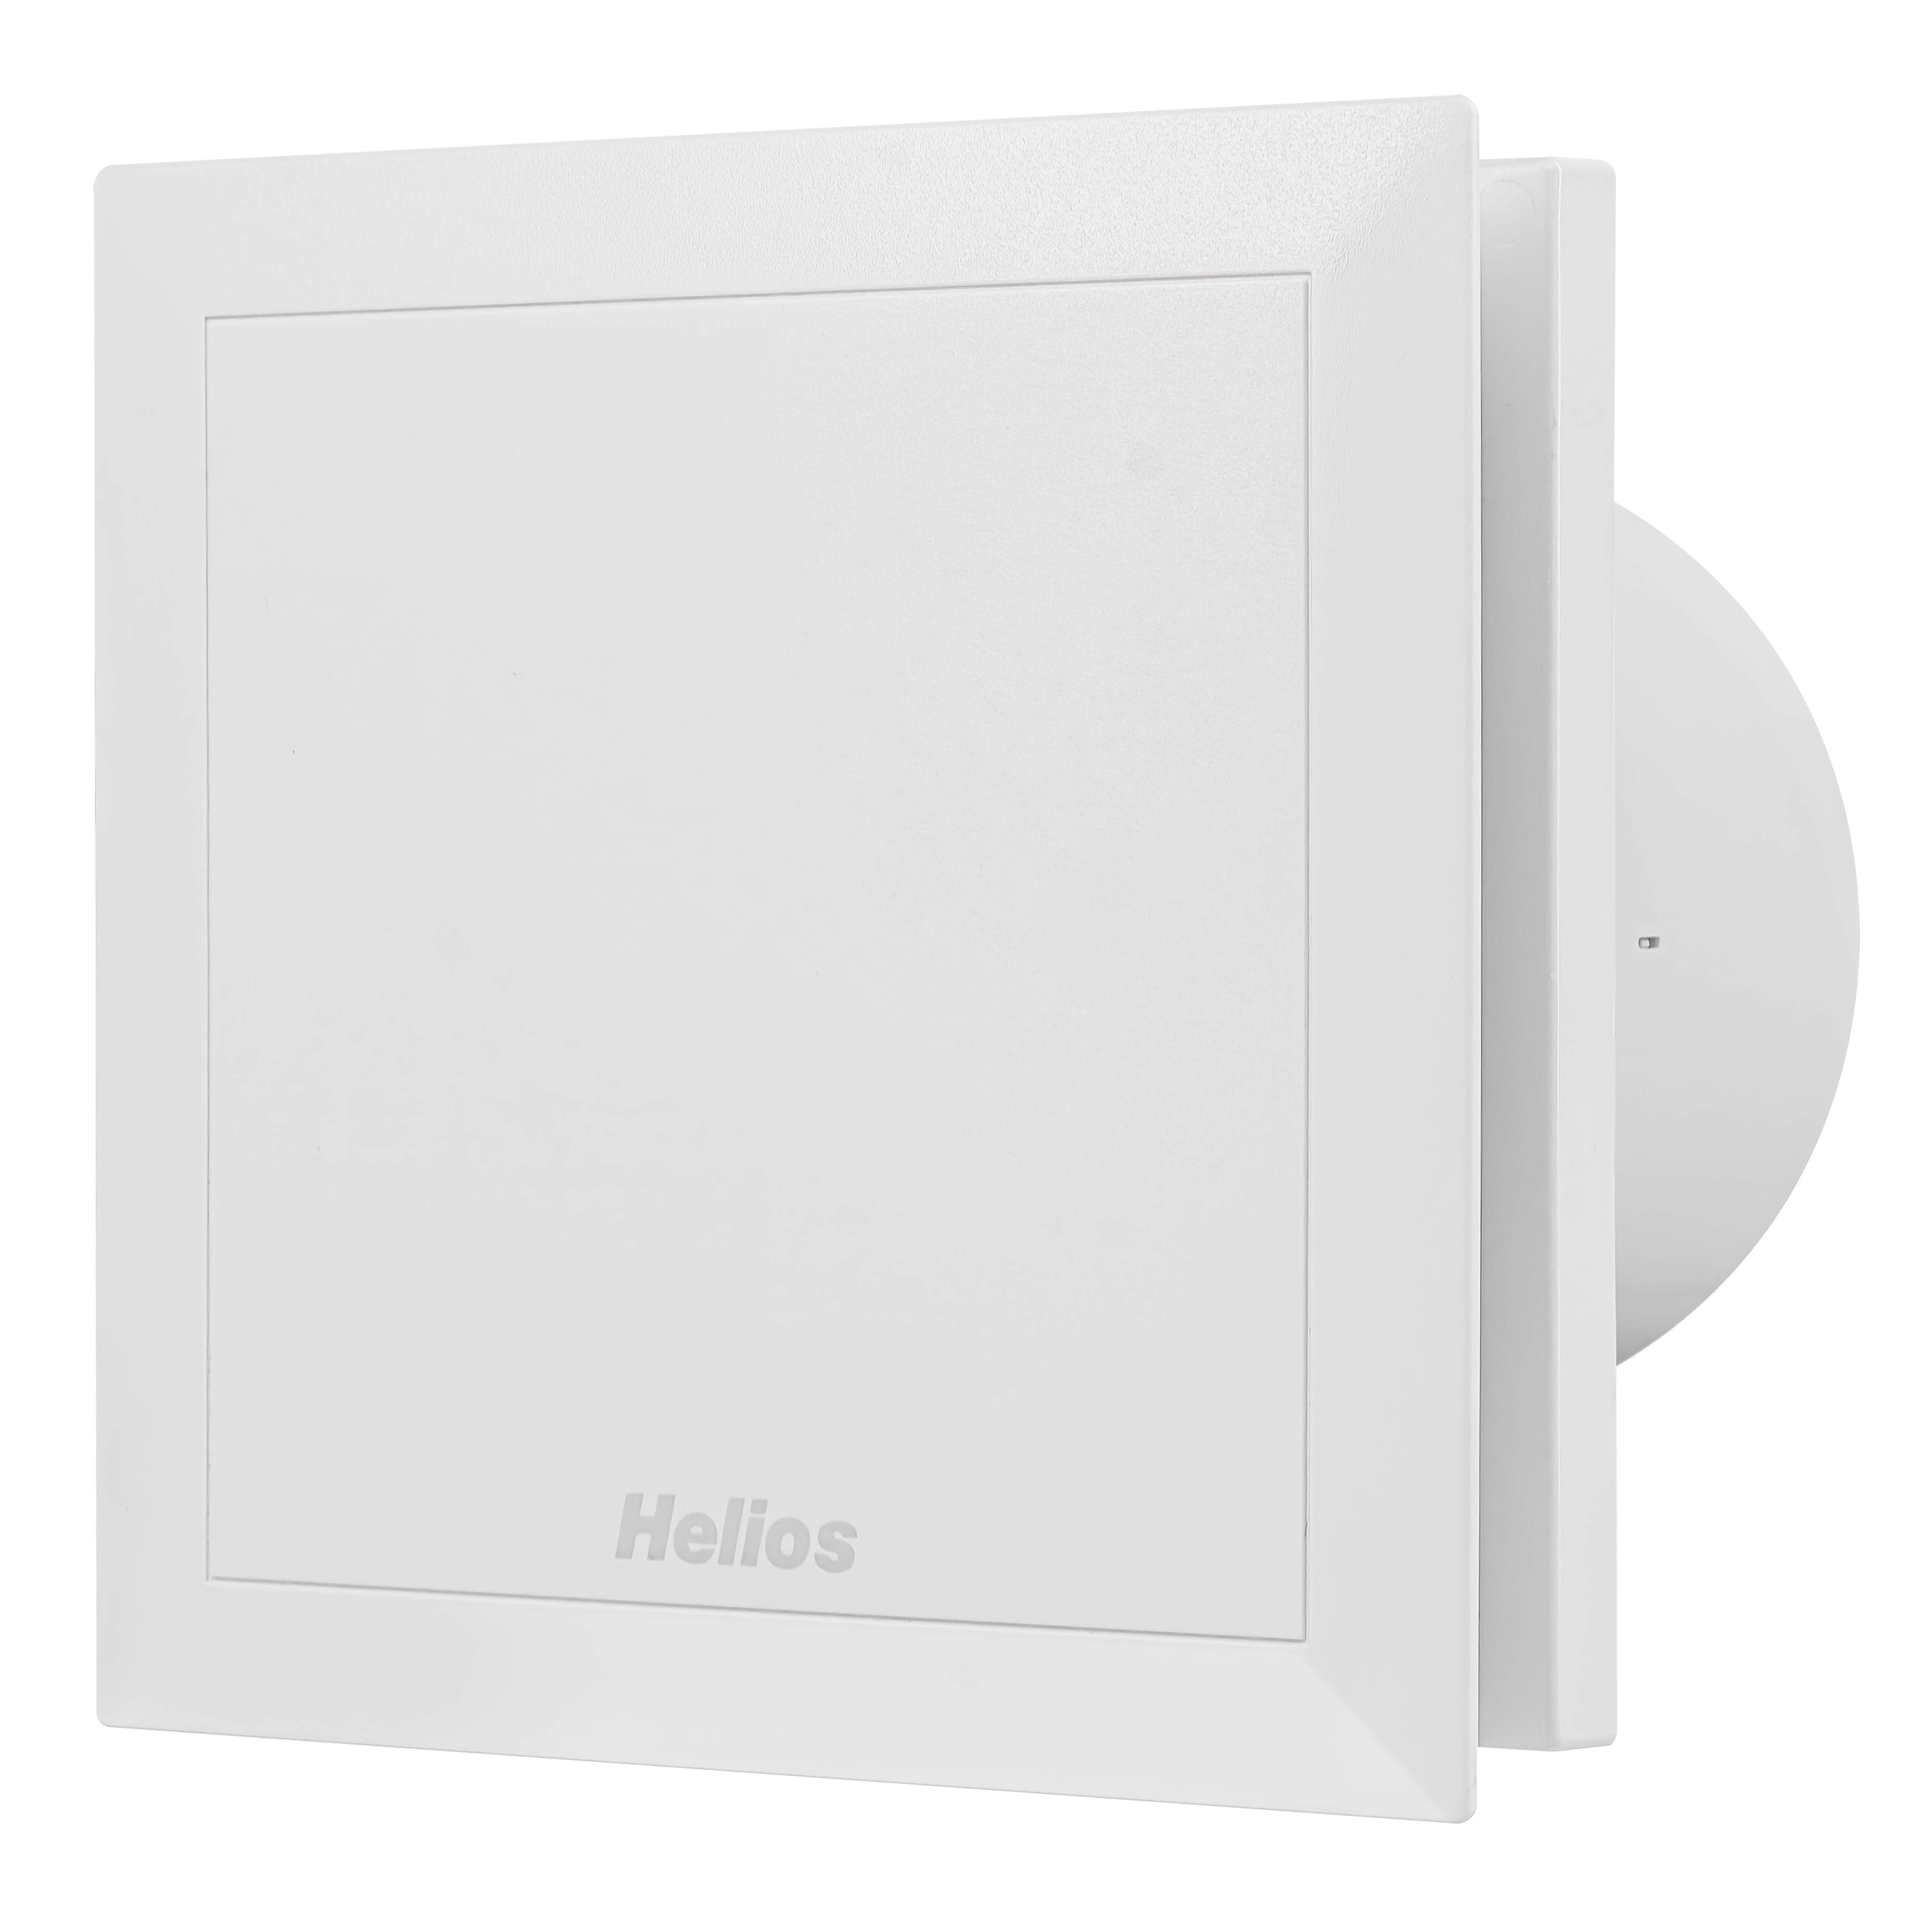 Купить вентилятор helios вытяжной Helios MiniVent M1/120 N/C в Киеве